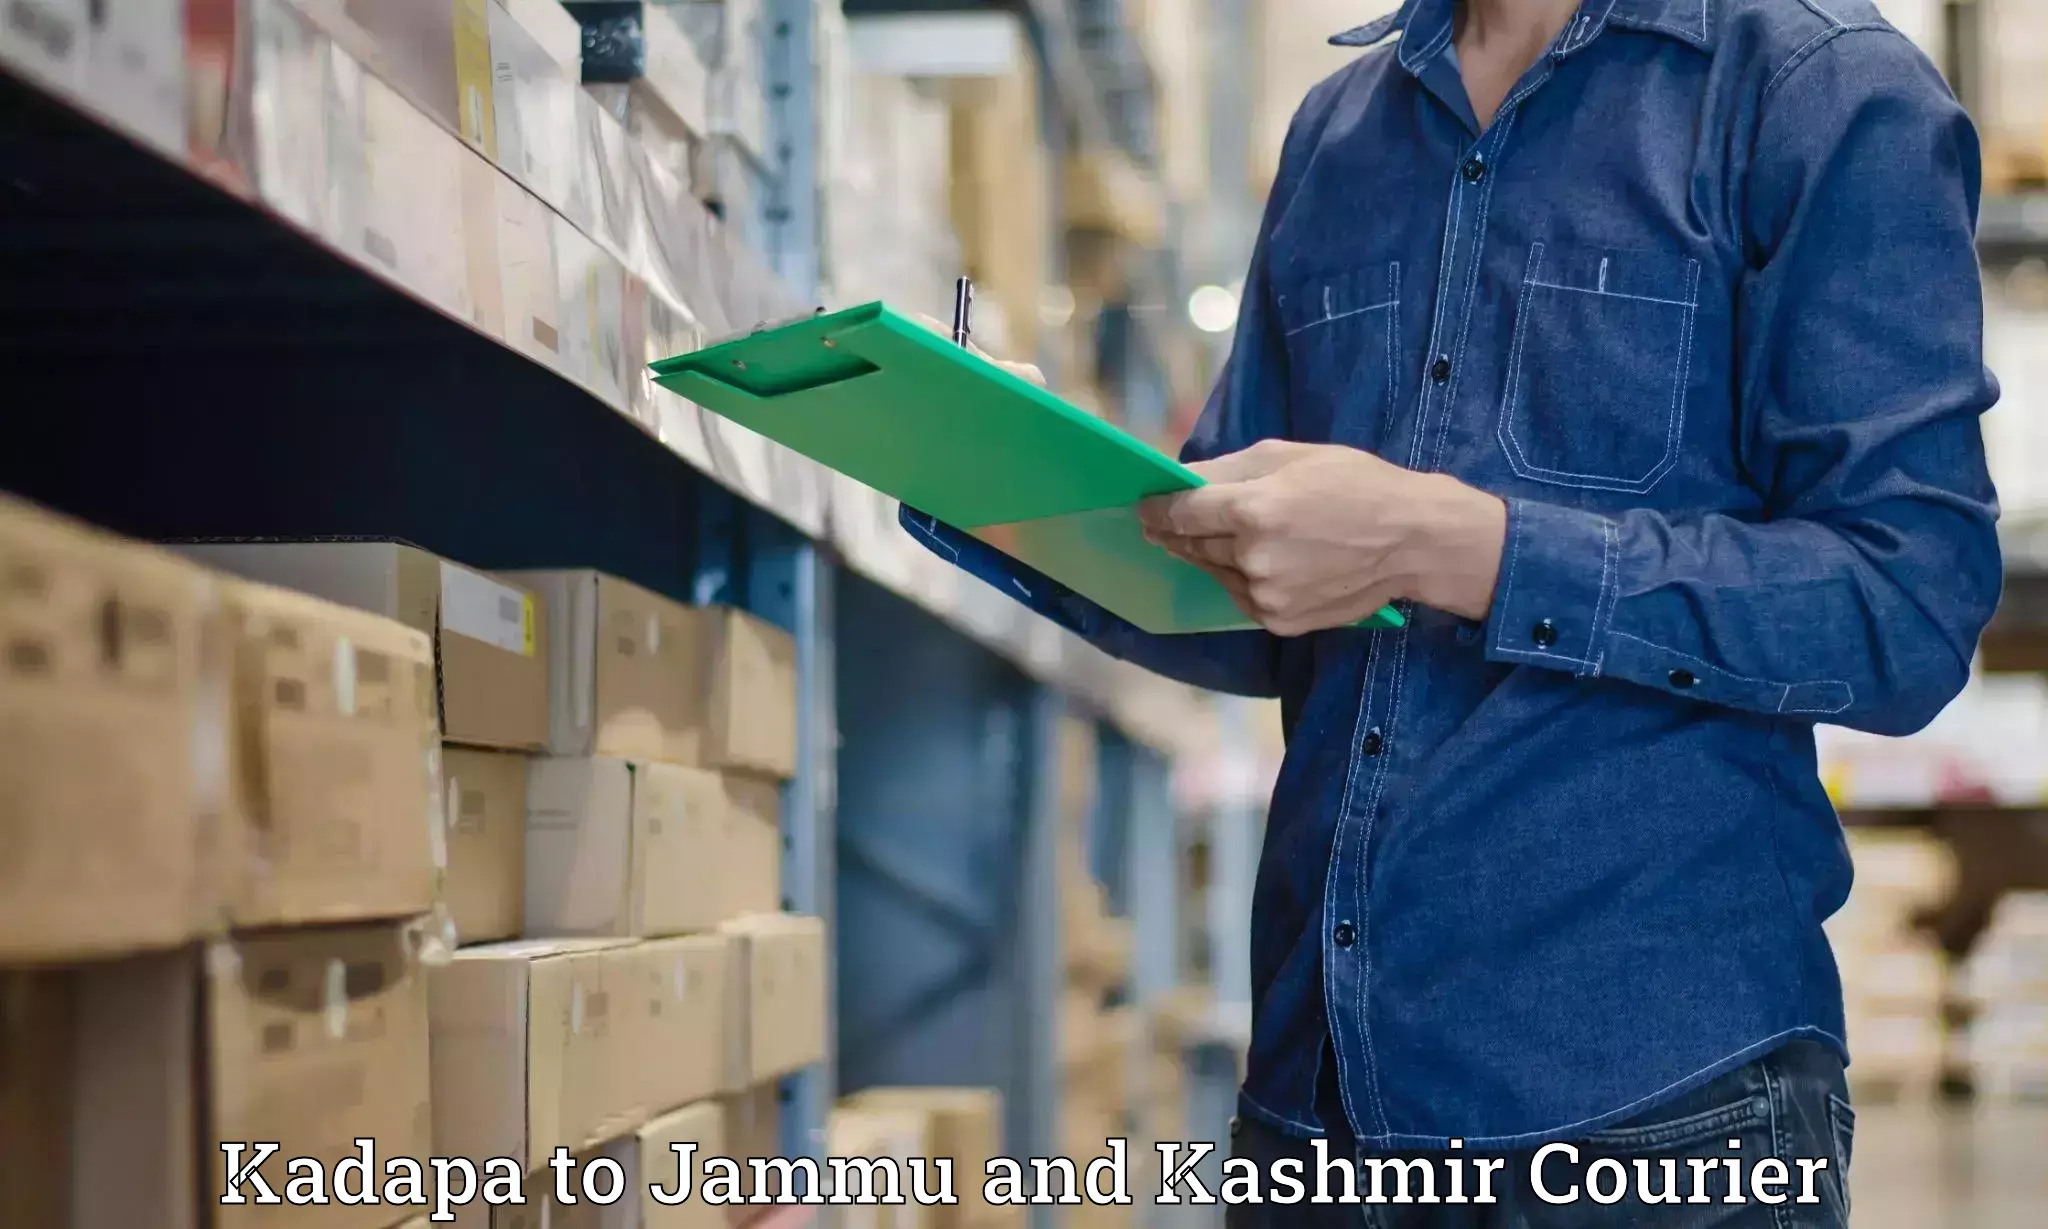 Express logistics service Kadapa to Jammu and Kashmir